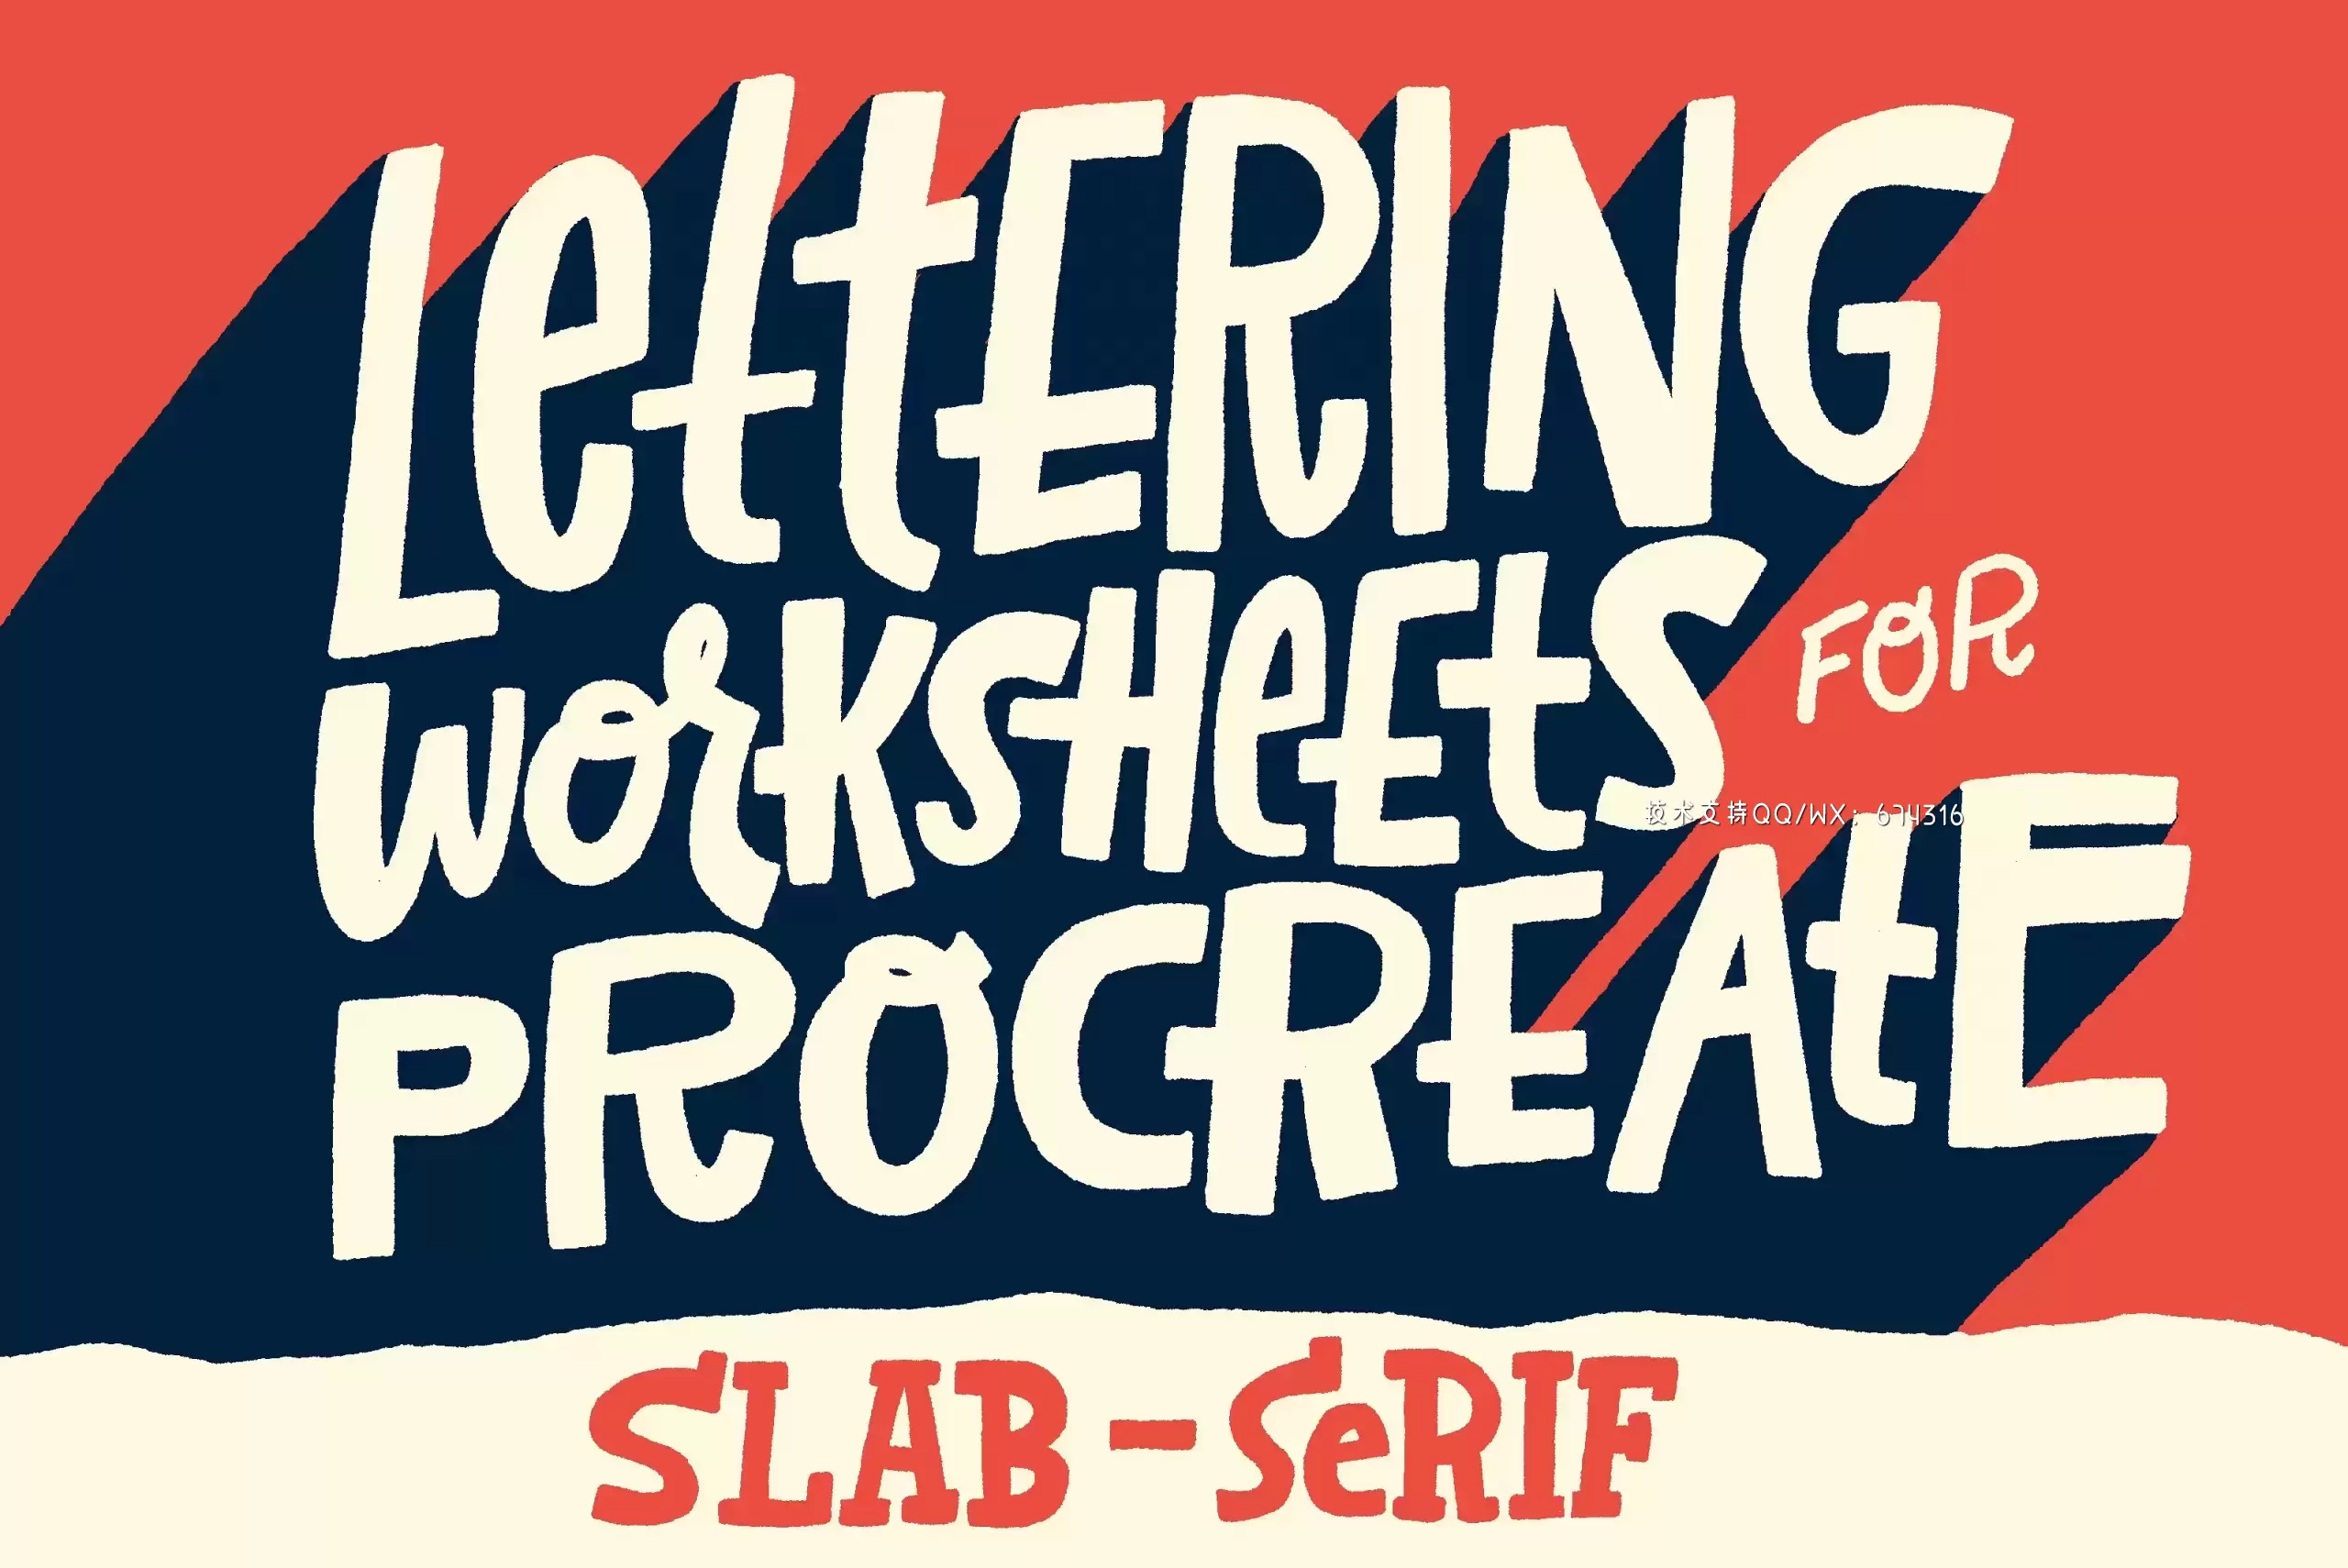 手写图层样式字体 Slab-Serif Lettering Worksheet插图